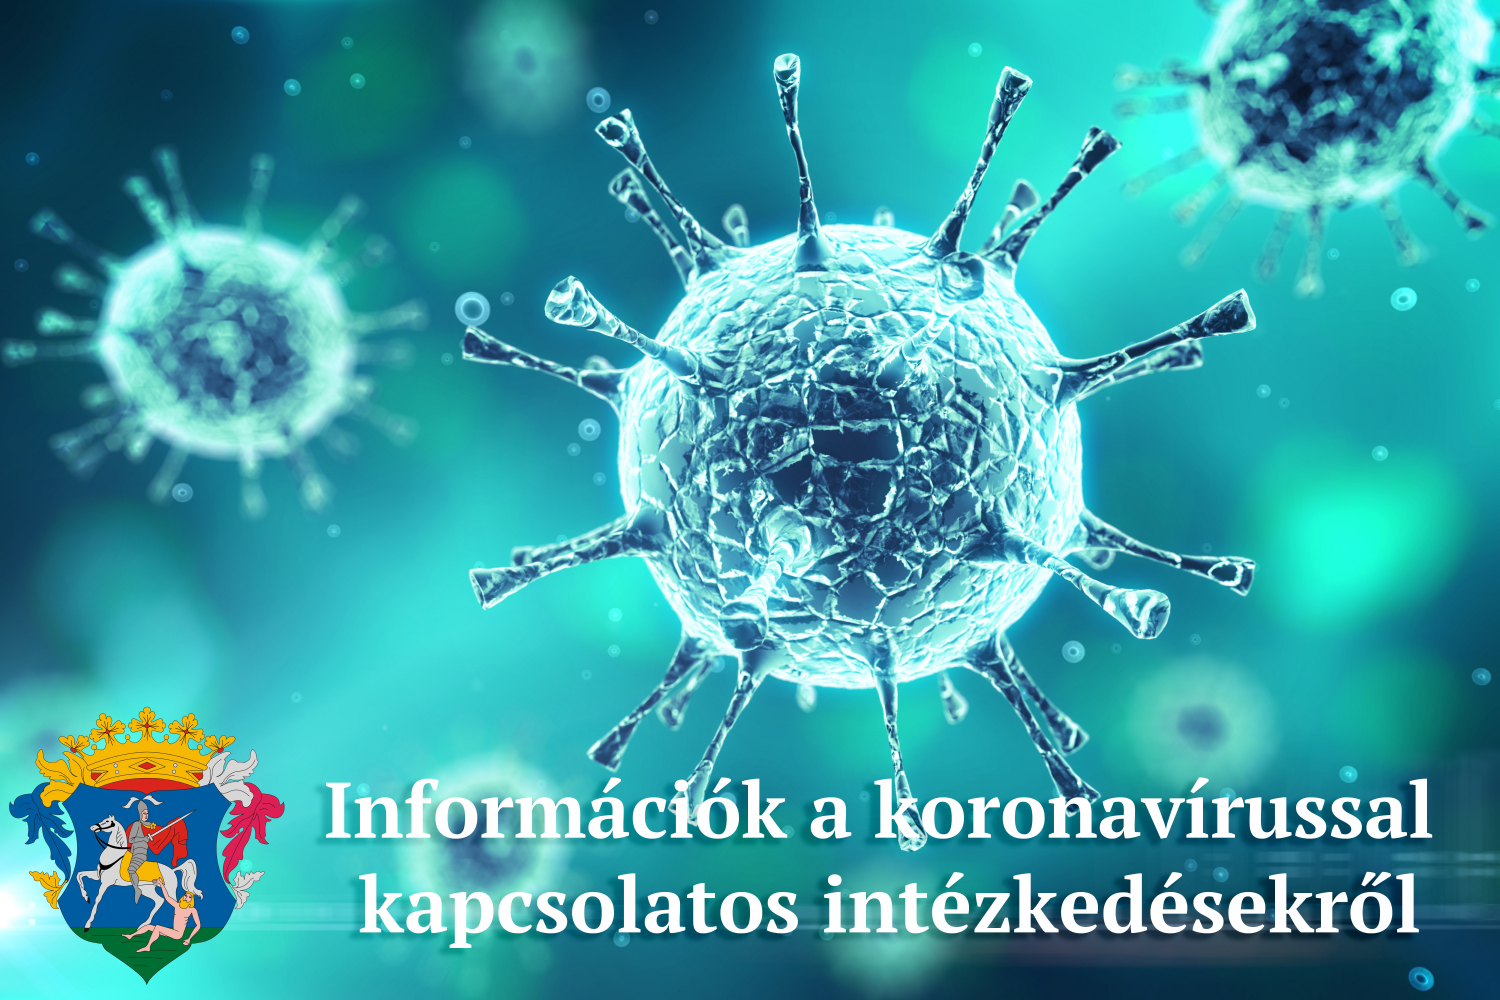 információk a koronavírussal kapcsolatos intézkedésekről, döntésekről 2020. május 18-19 között